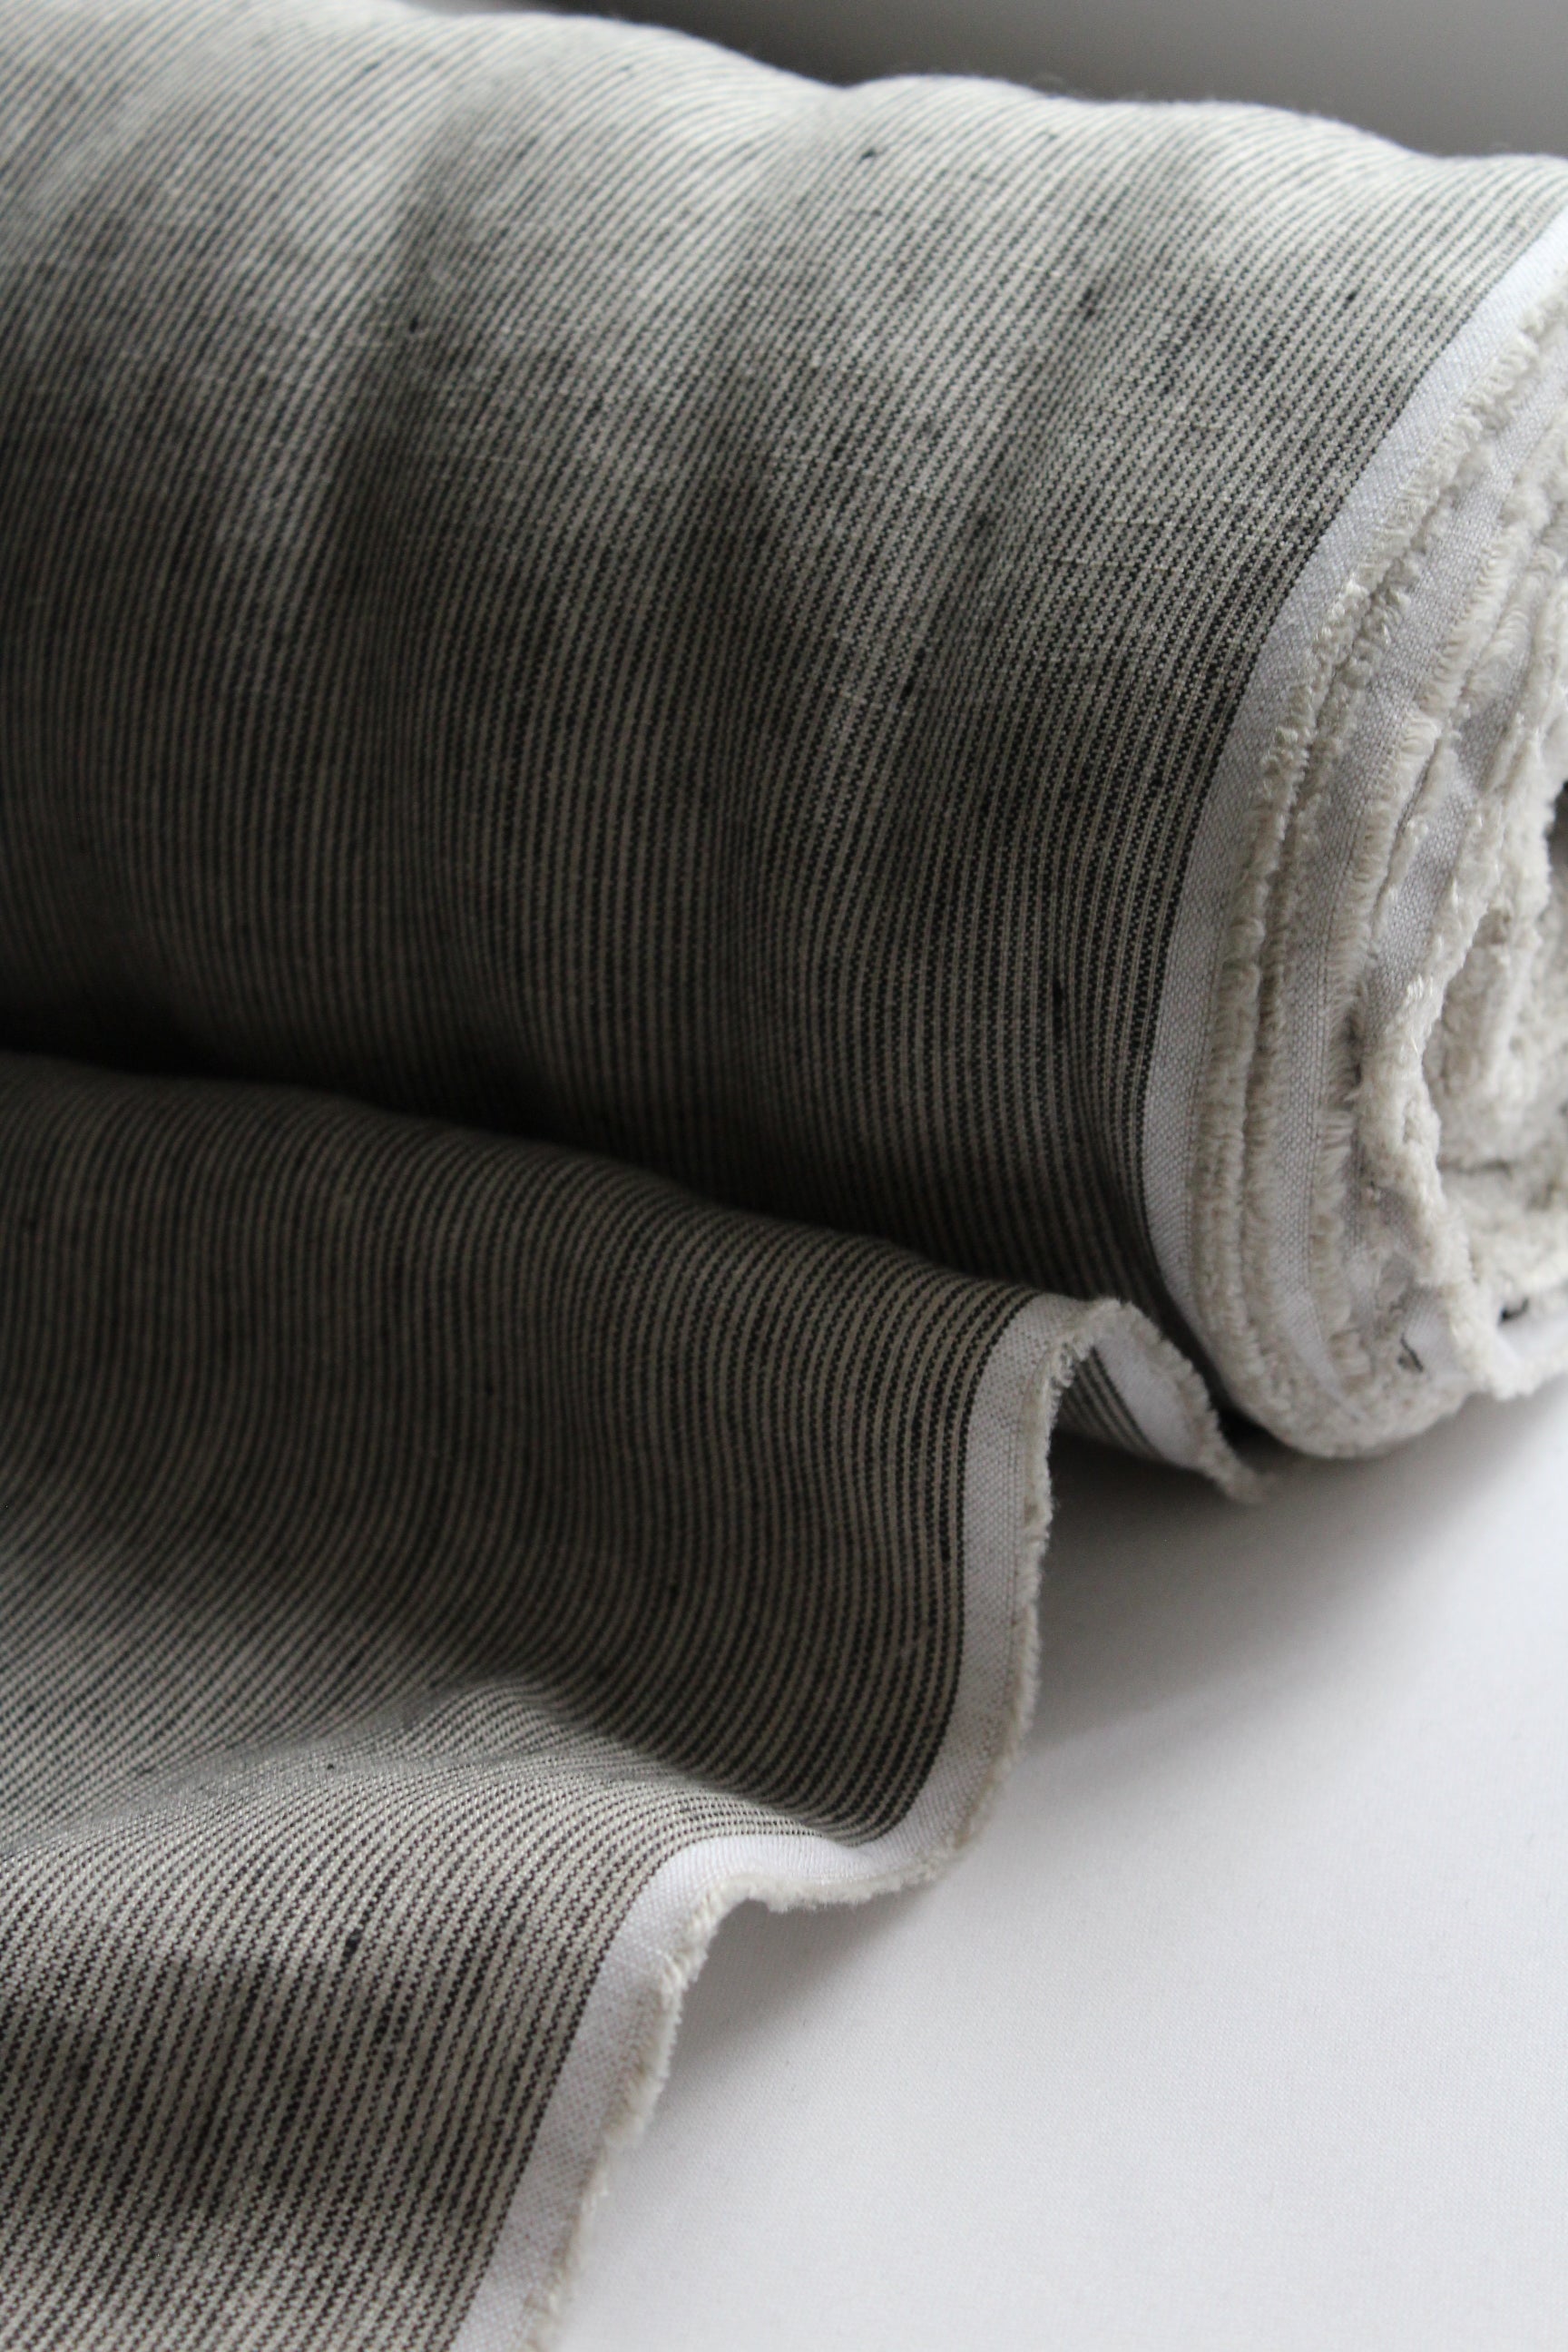 Siena Mocha Stripe Linen Fabric - AVLEN